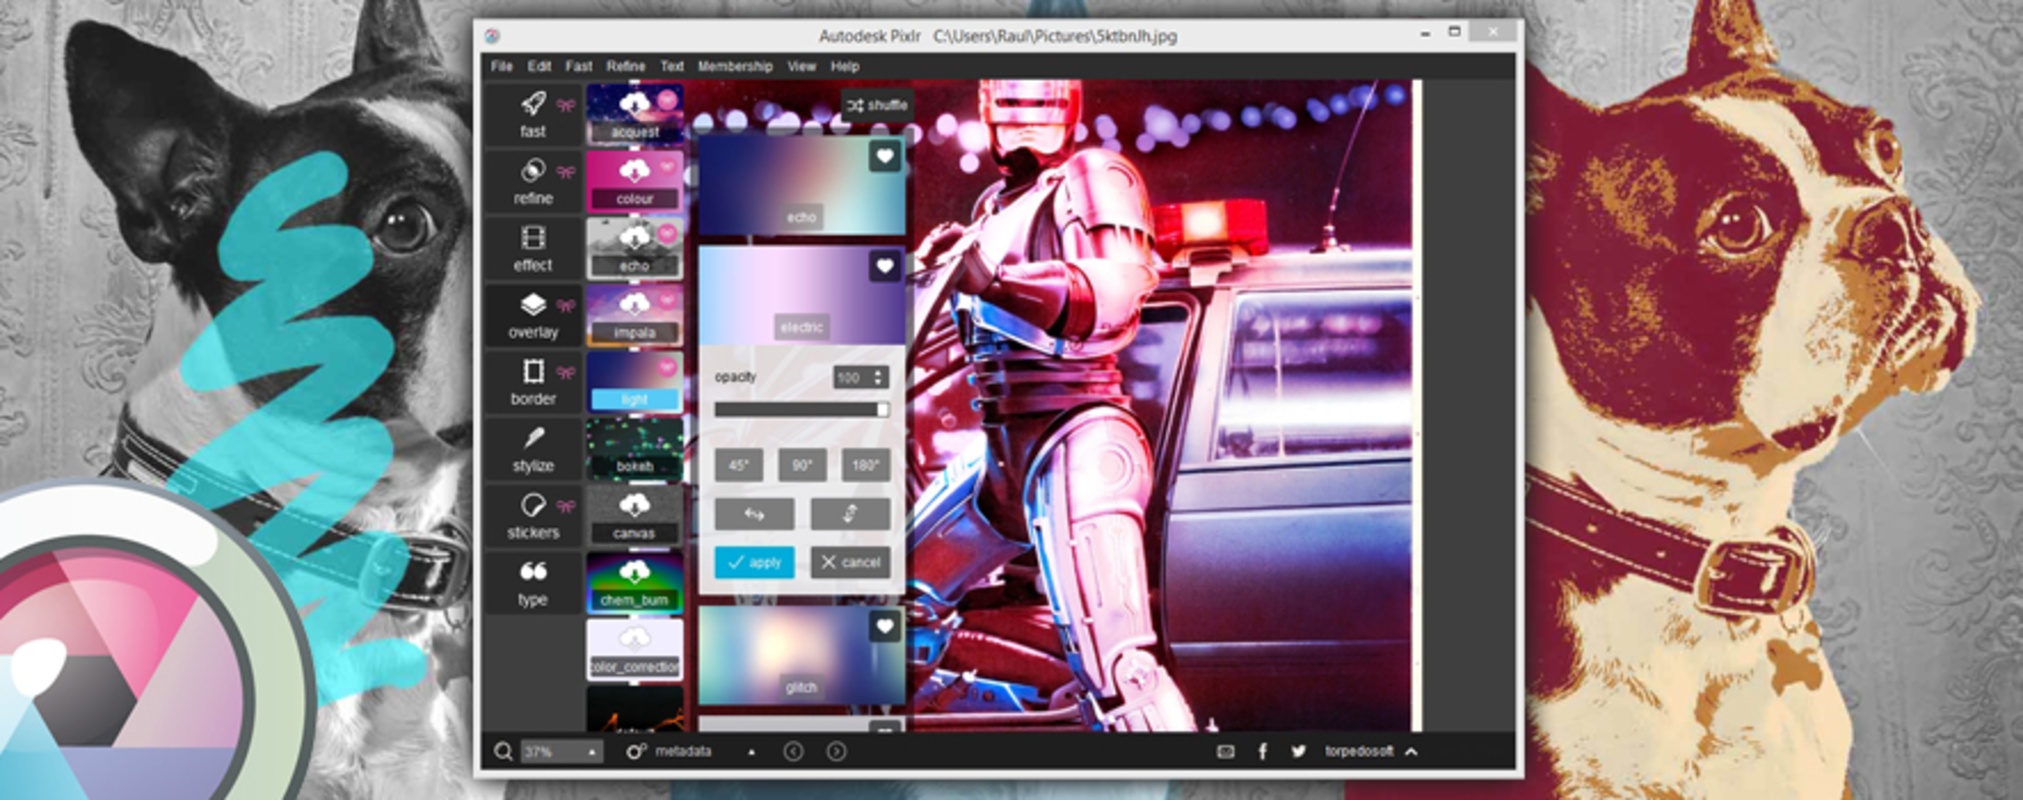 Pixlr Desktop 1.1.1.0 for Windows Screenshot 2